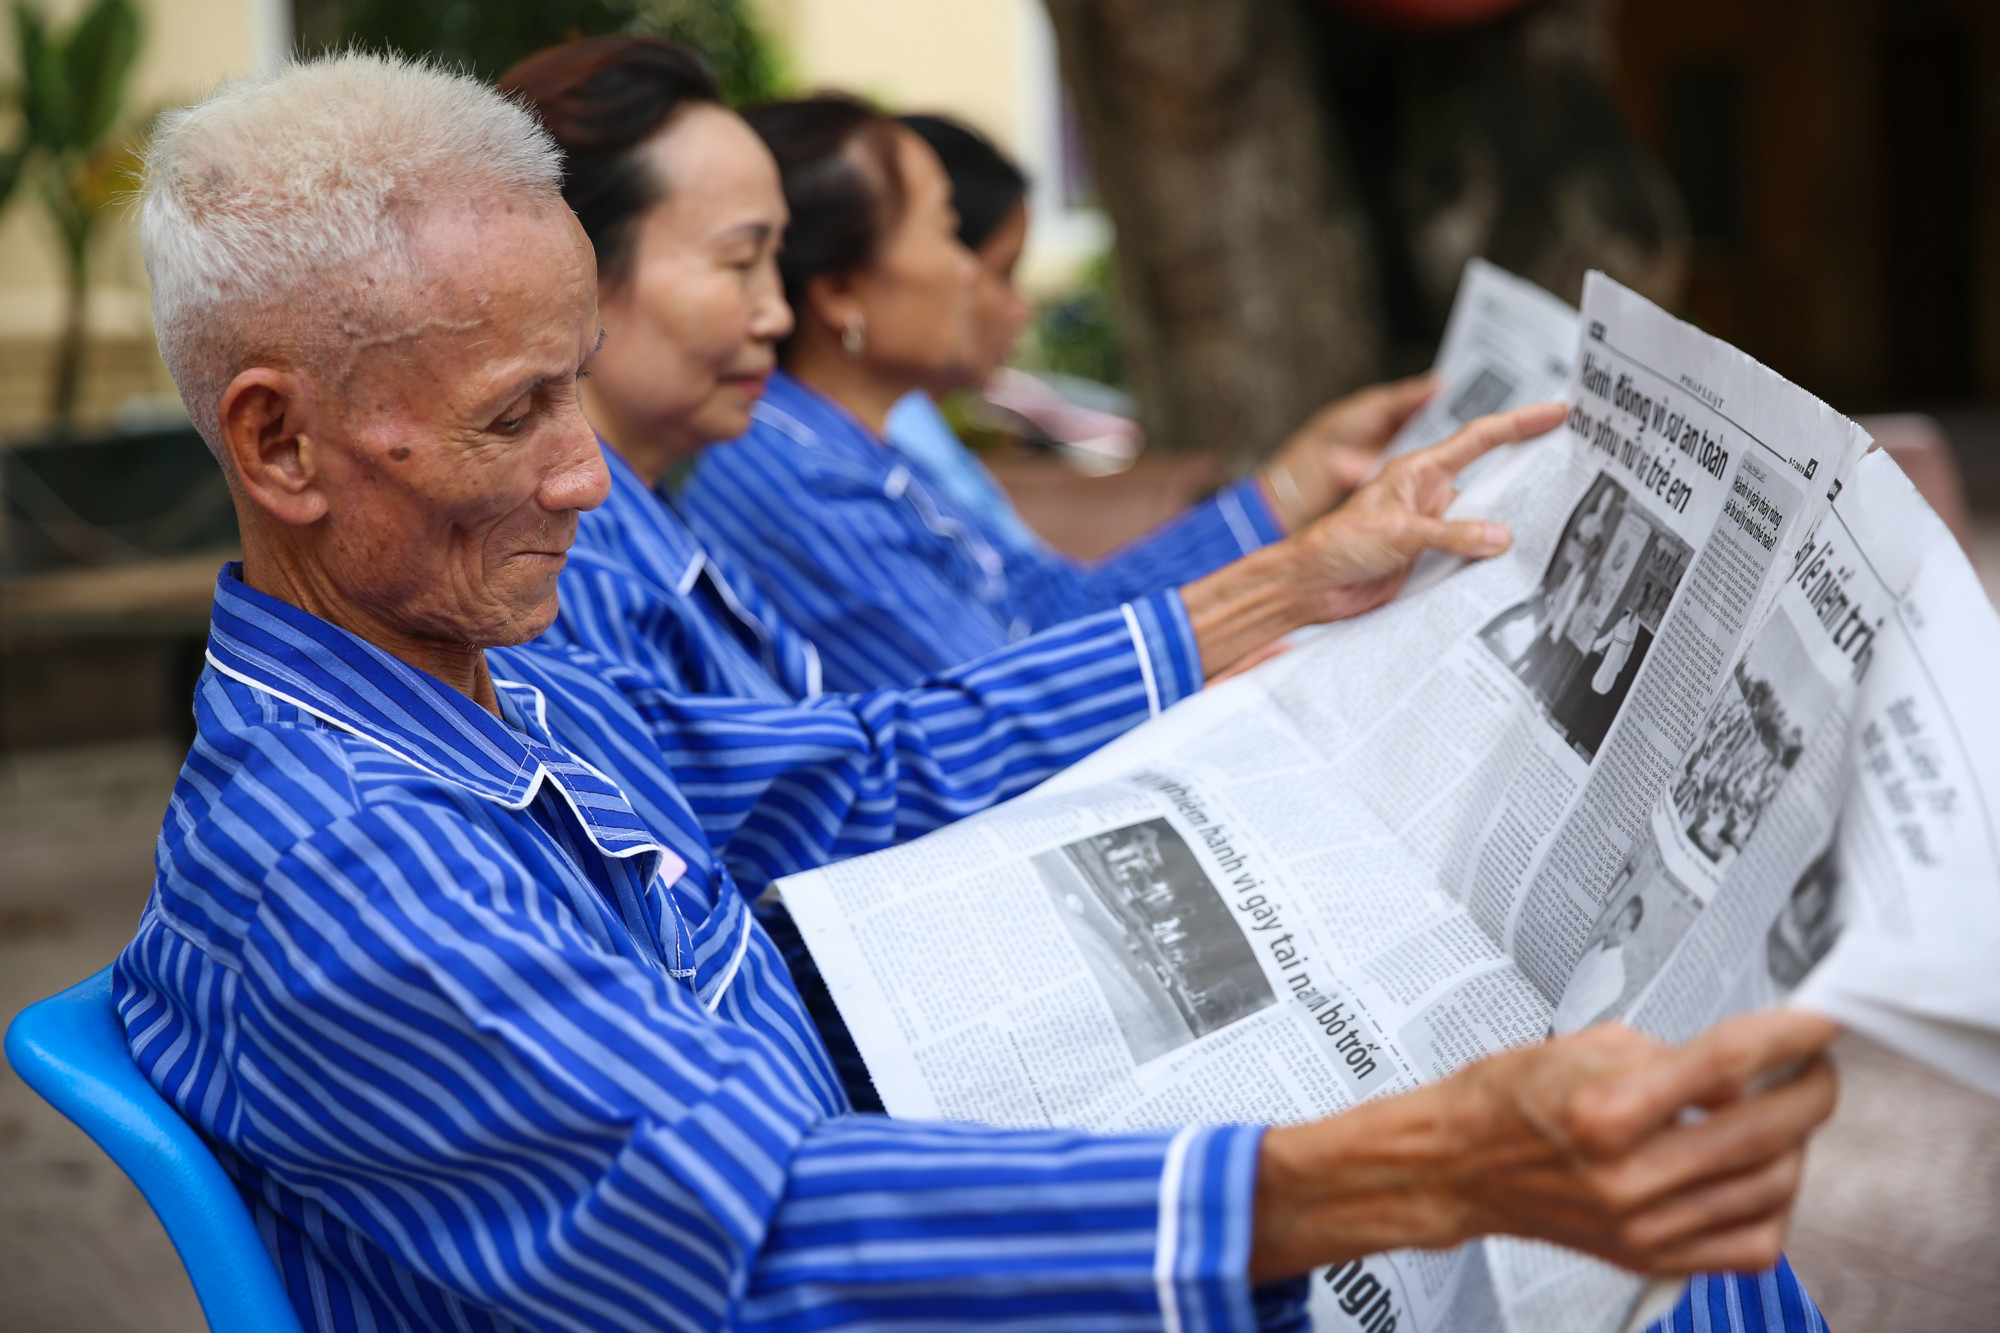 Thư giãn bằng cách đọc báo cũng góp phần quan trọng giúp bệnh nhân nhanh phục hồi sức khỏe